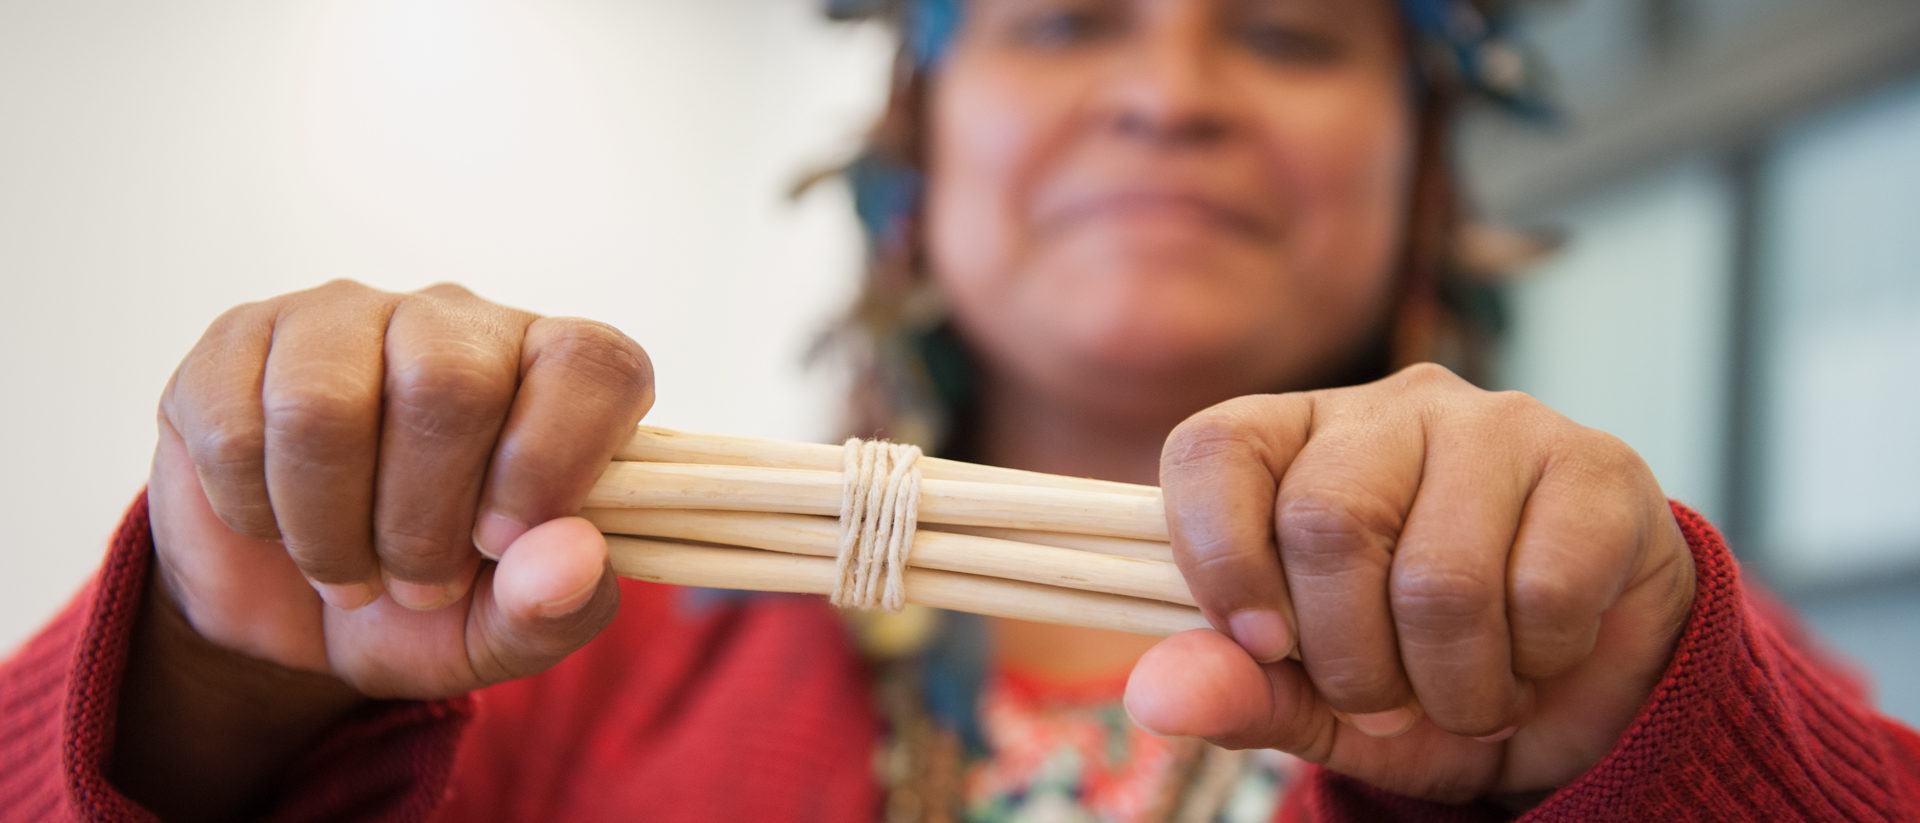 Gemeinsam stark sein - die Indigenen-Vertreterin Ernestina Macuxi symbolisiert mit einem Bündel Holzstäbe Stärke durch Verbundenheit